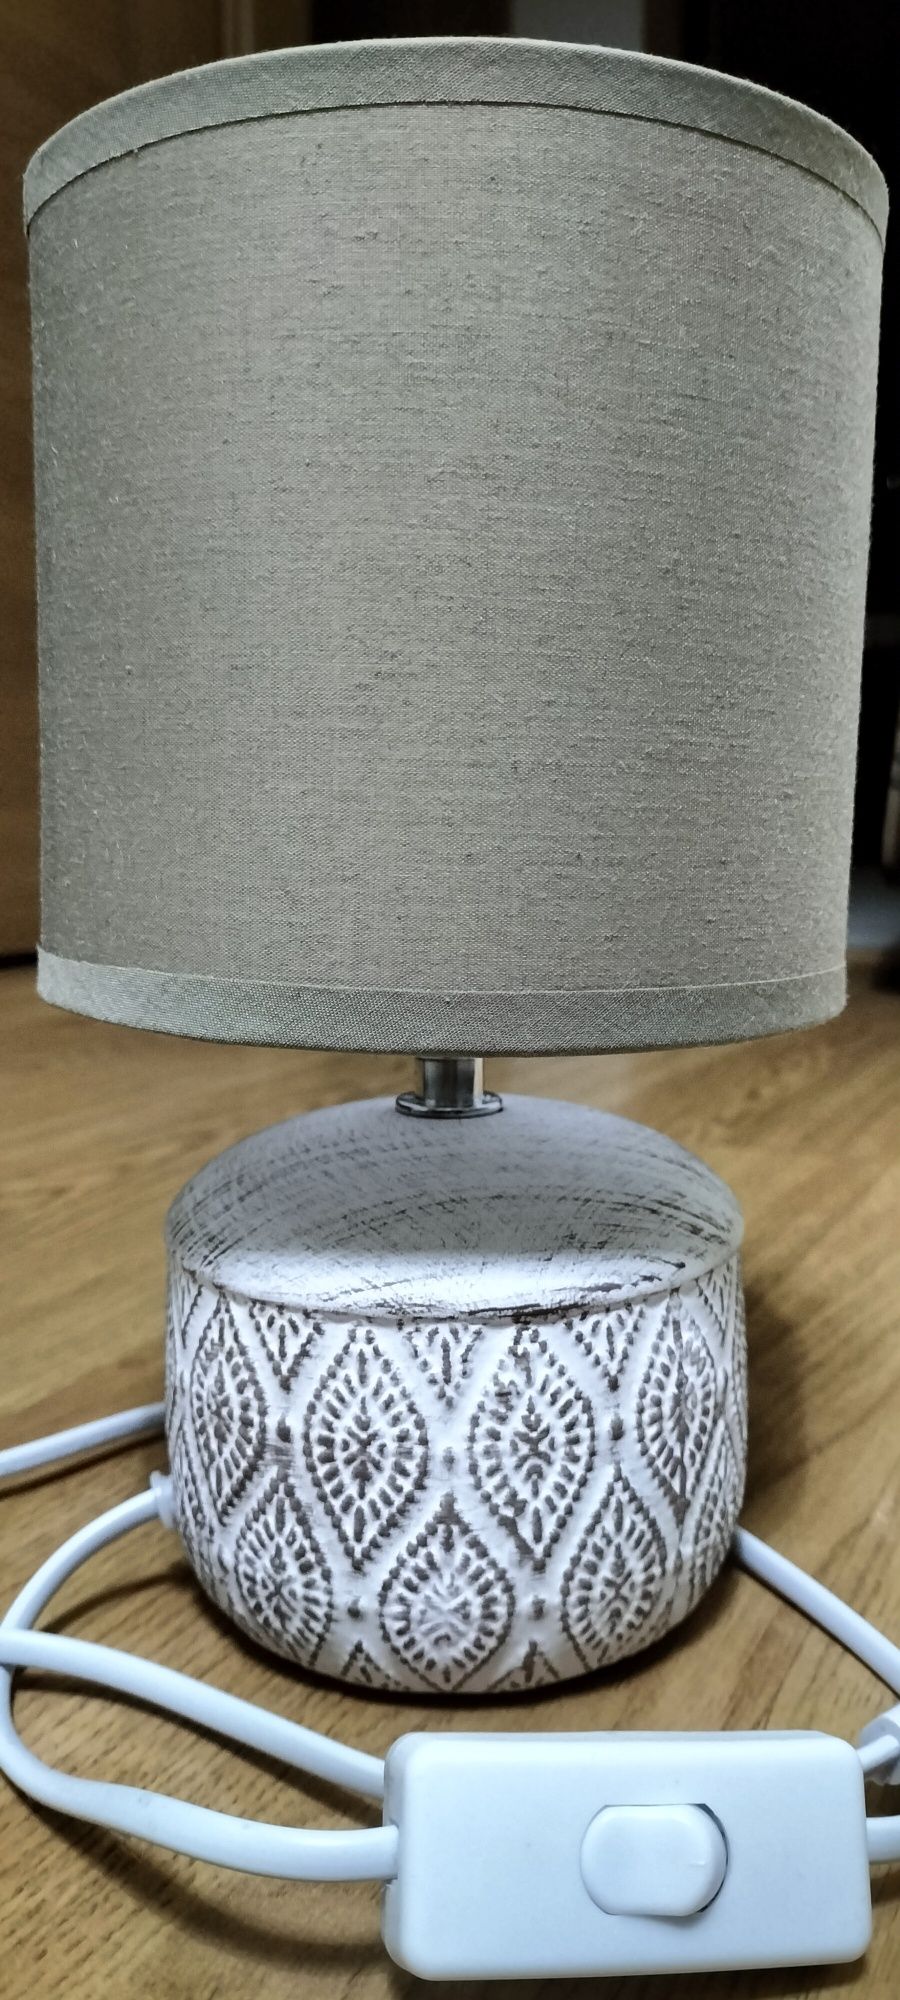 Candeiro cerâmica pequeno como novo sem marcas de uso 25cm altura